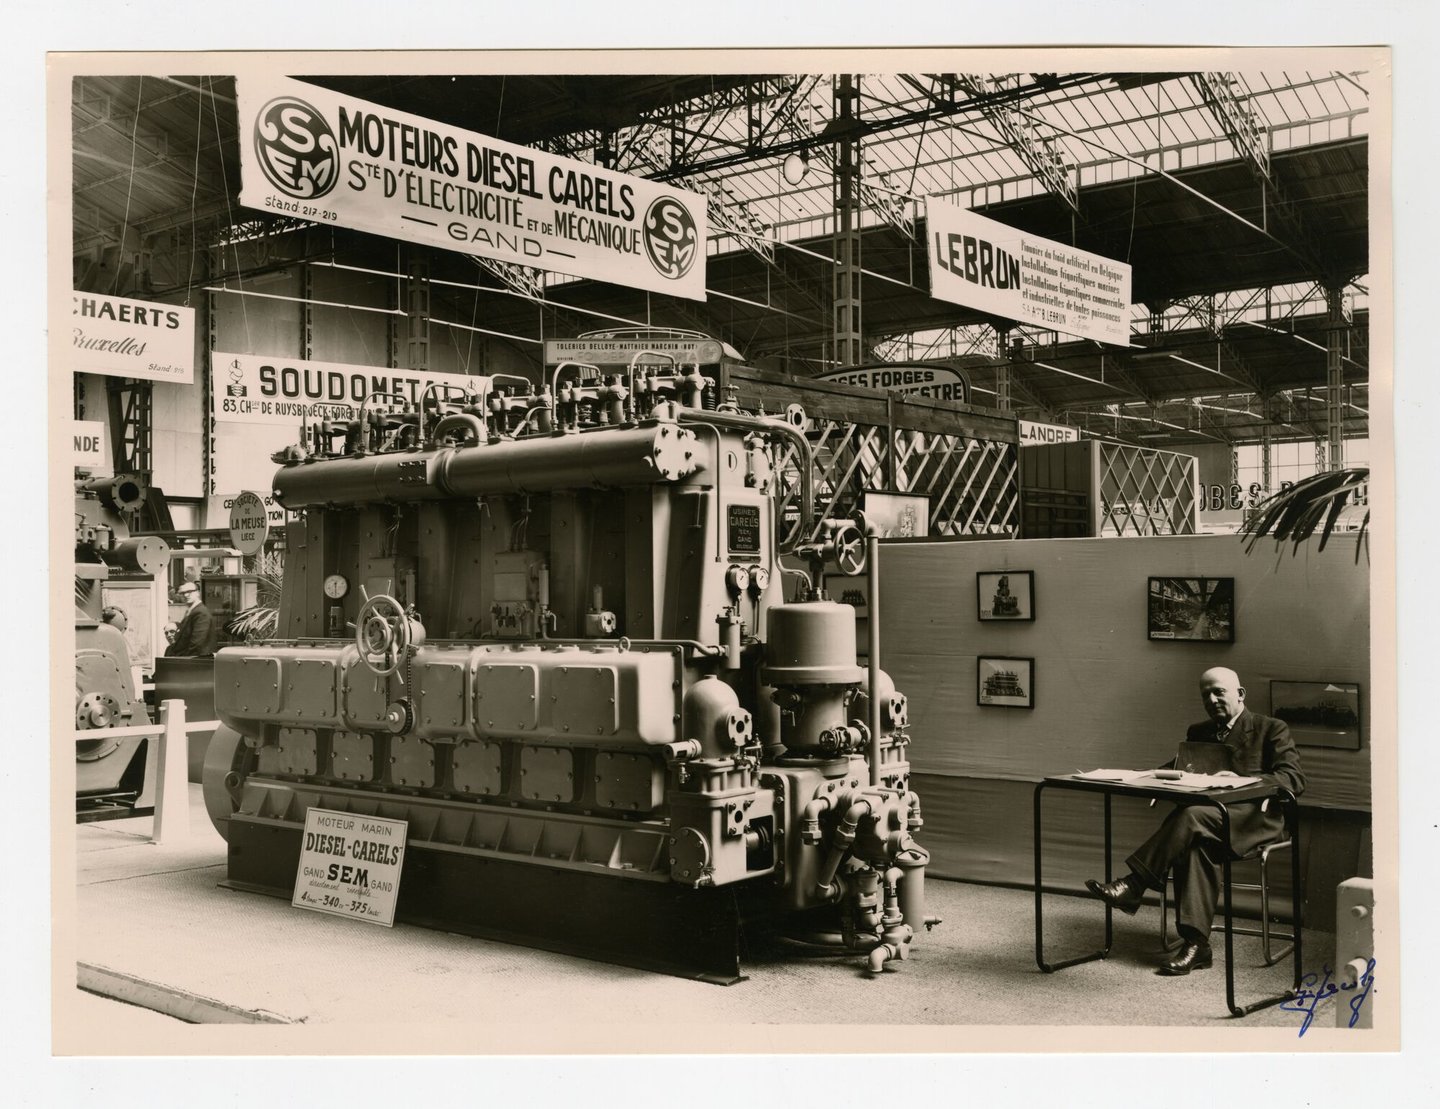 Promotiestand met scheepsdiesel geproduceerd door SEM-Carels op een tentoonstelling in Luik in 1950